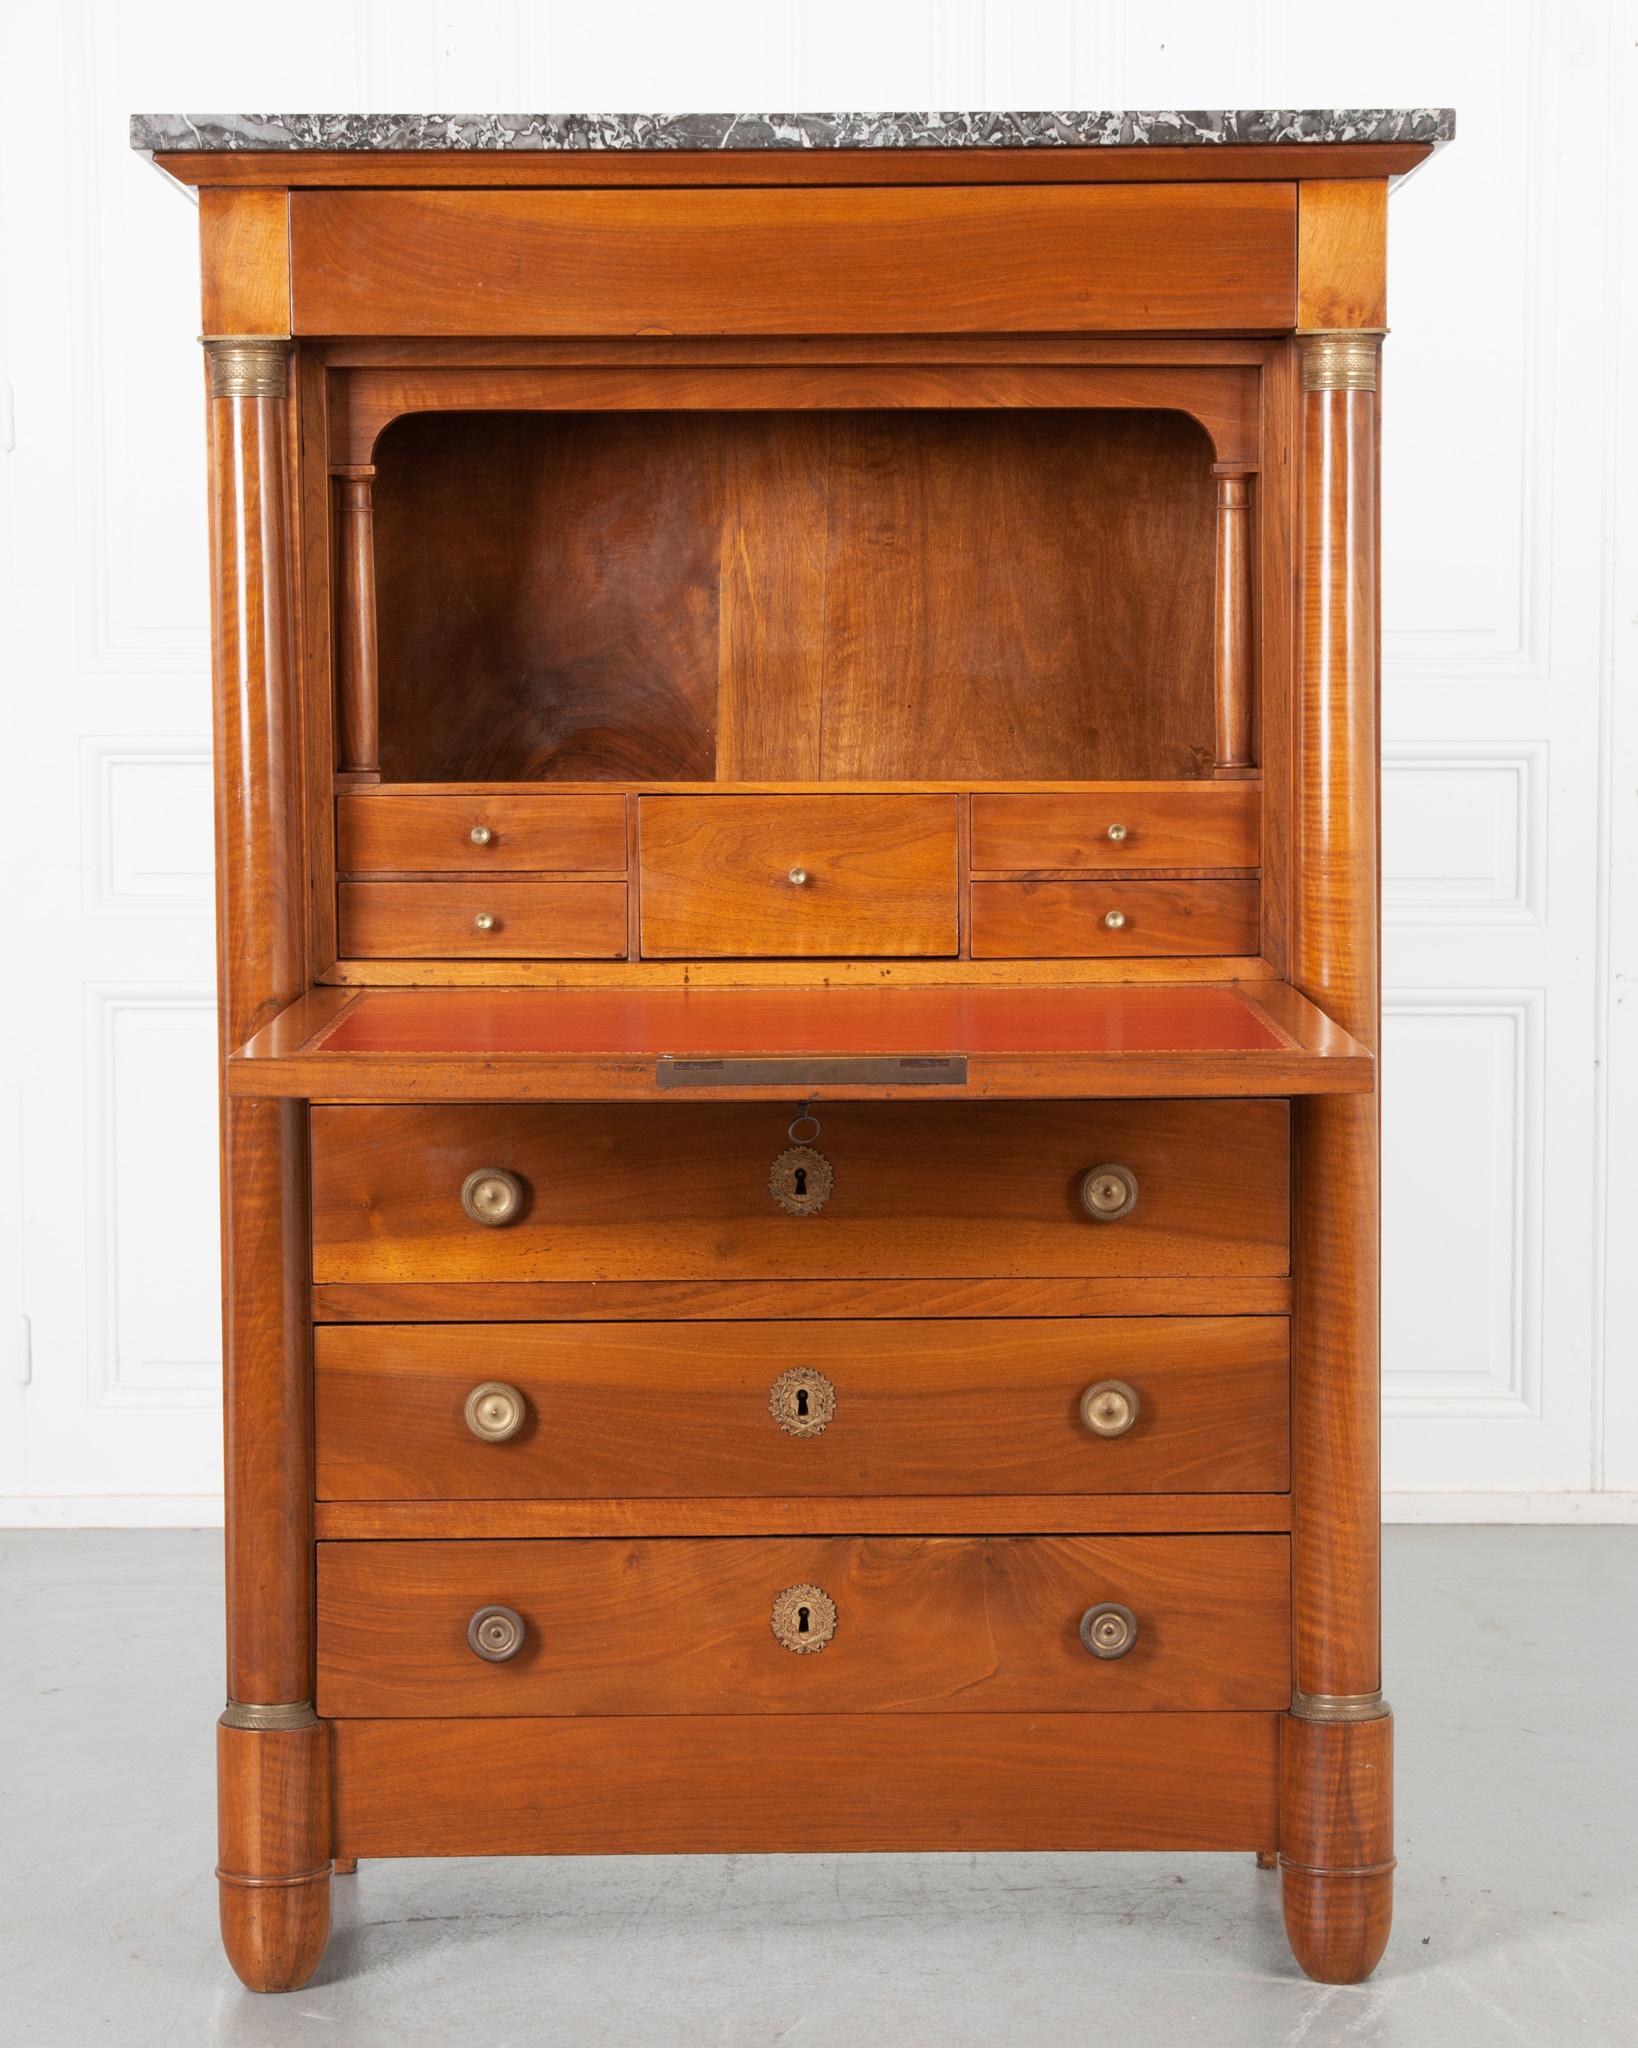 Ein statley 19. Jahrhundert Mahagoni secre'taire a` abattant aus Frankreich, um 1810. Dieser Schreibtisch hat eine außergewöhnliche Platte aus anthrazitfarbenem Marmor, die über einer einzigen, in der Schürze versteckten Schublade ruht. Direkt unter